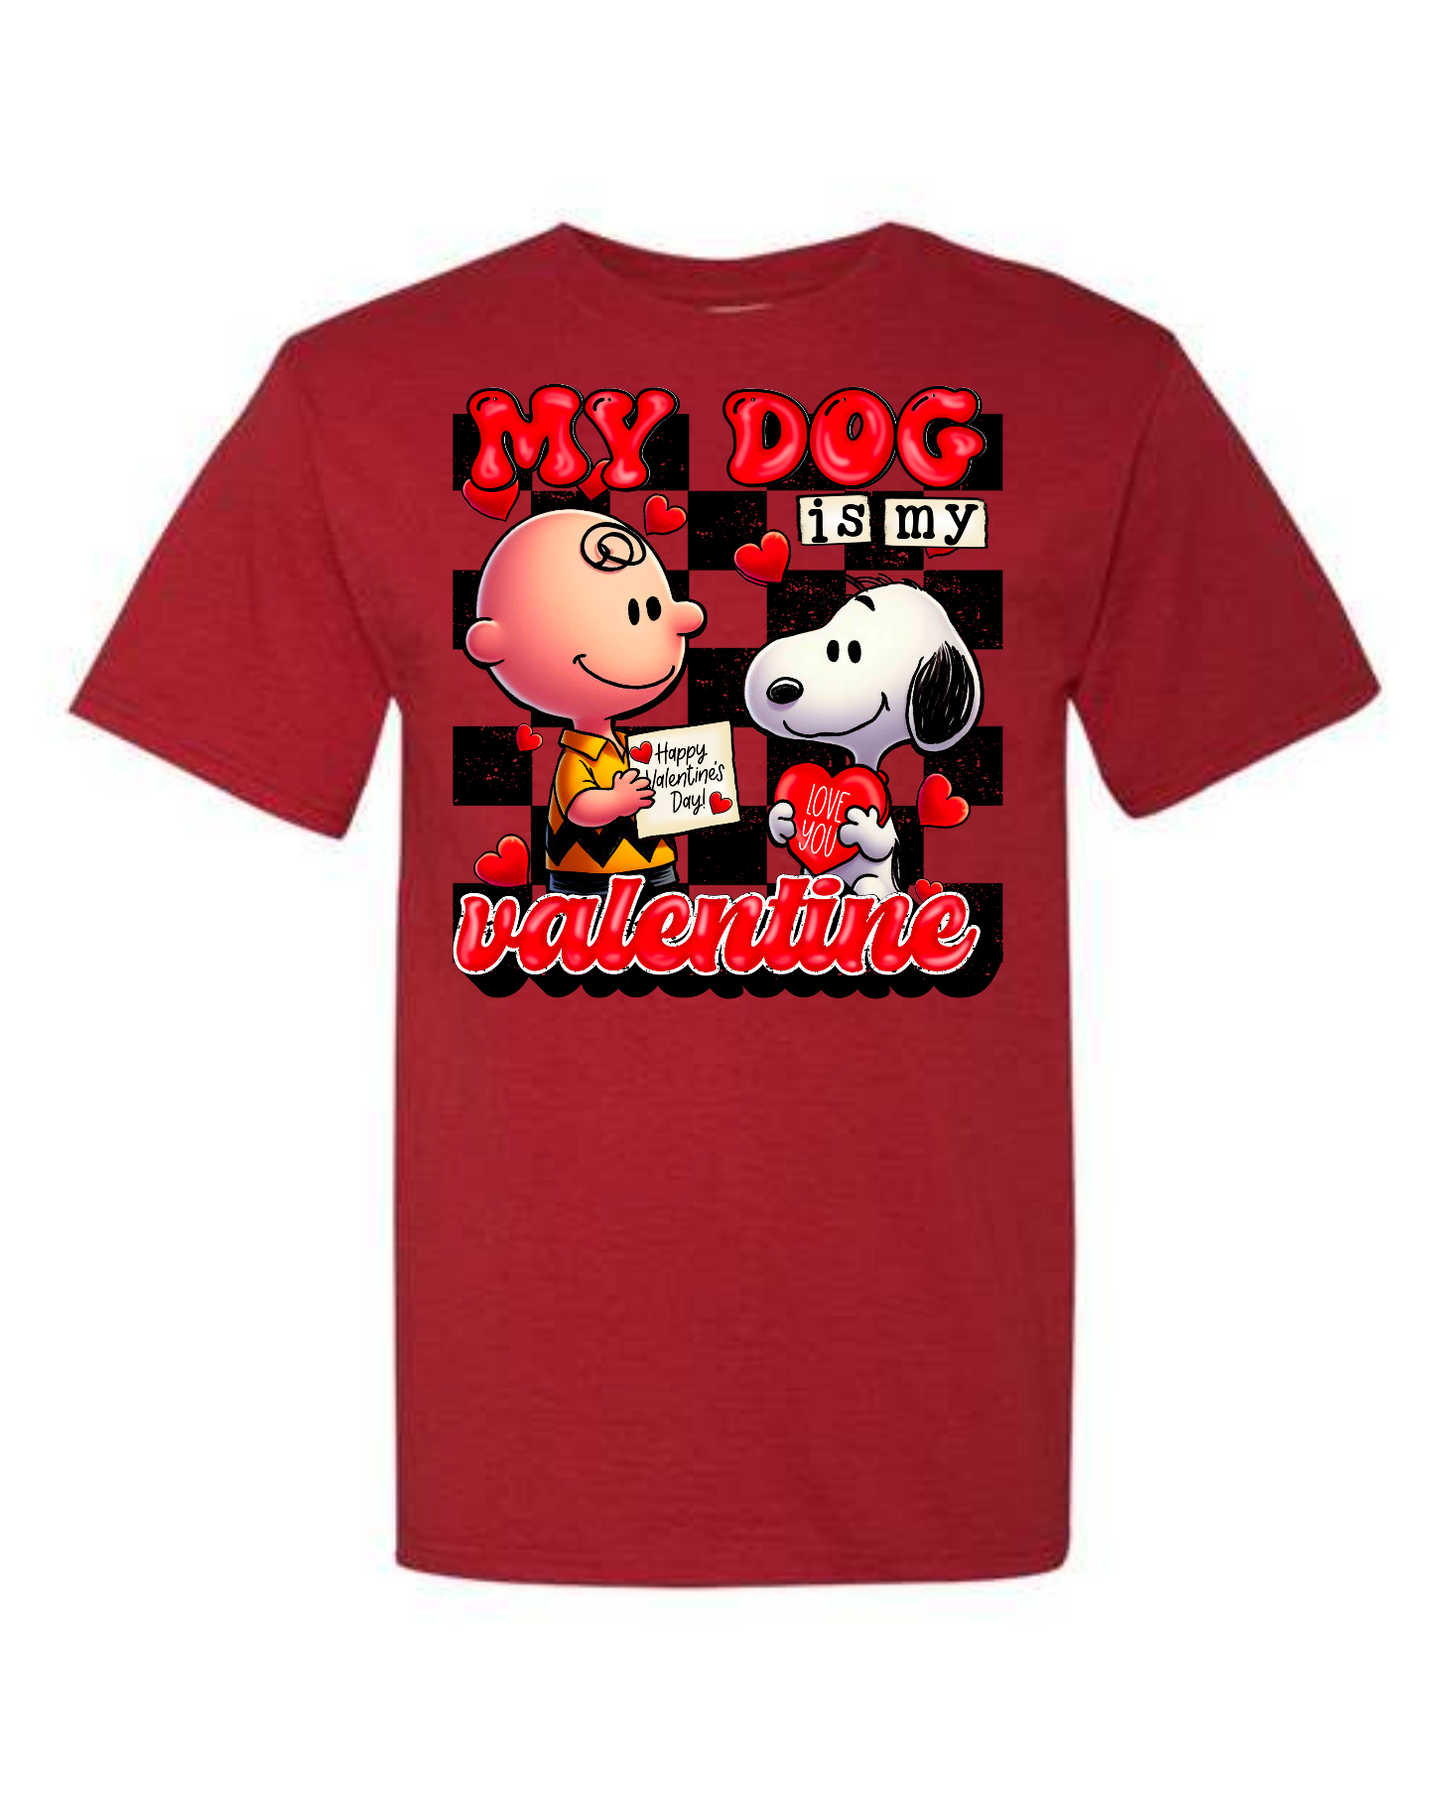 My Dog is my Valentine Shirt